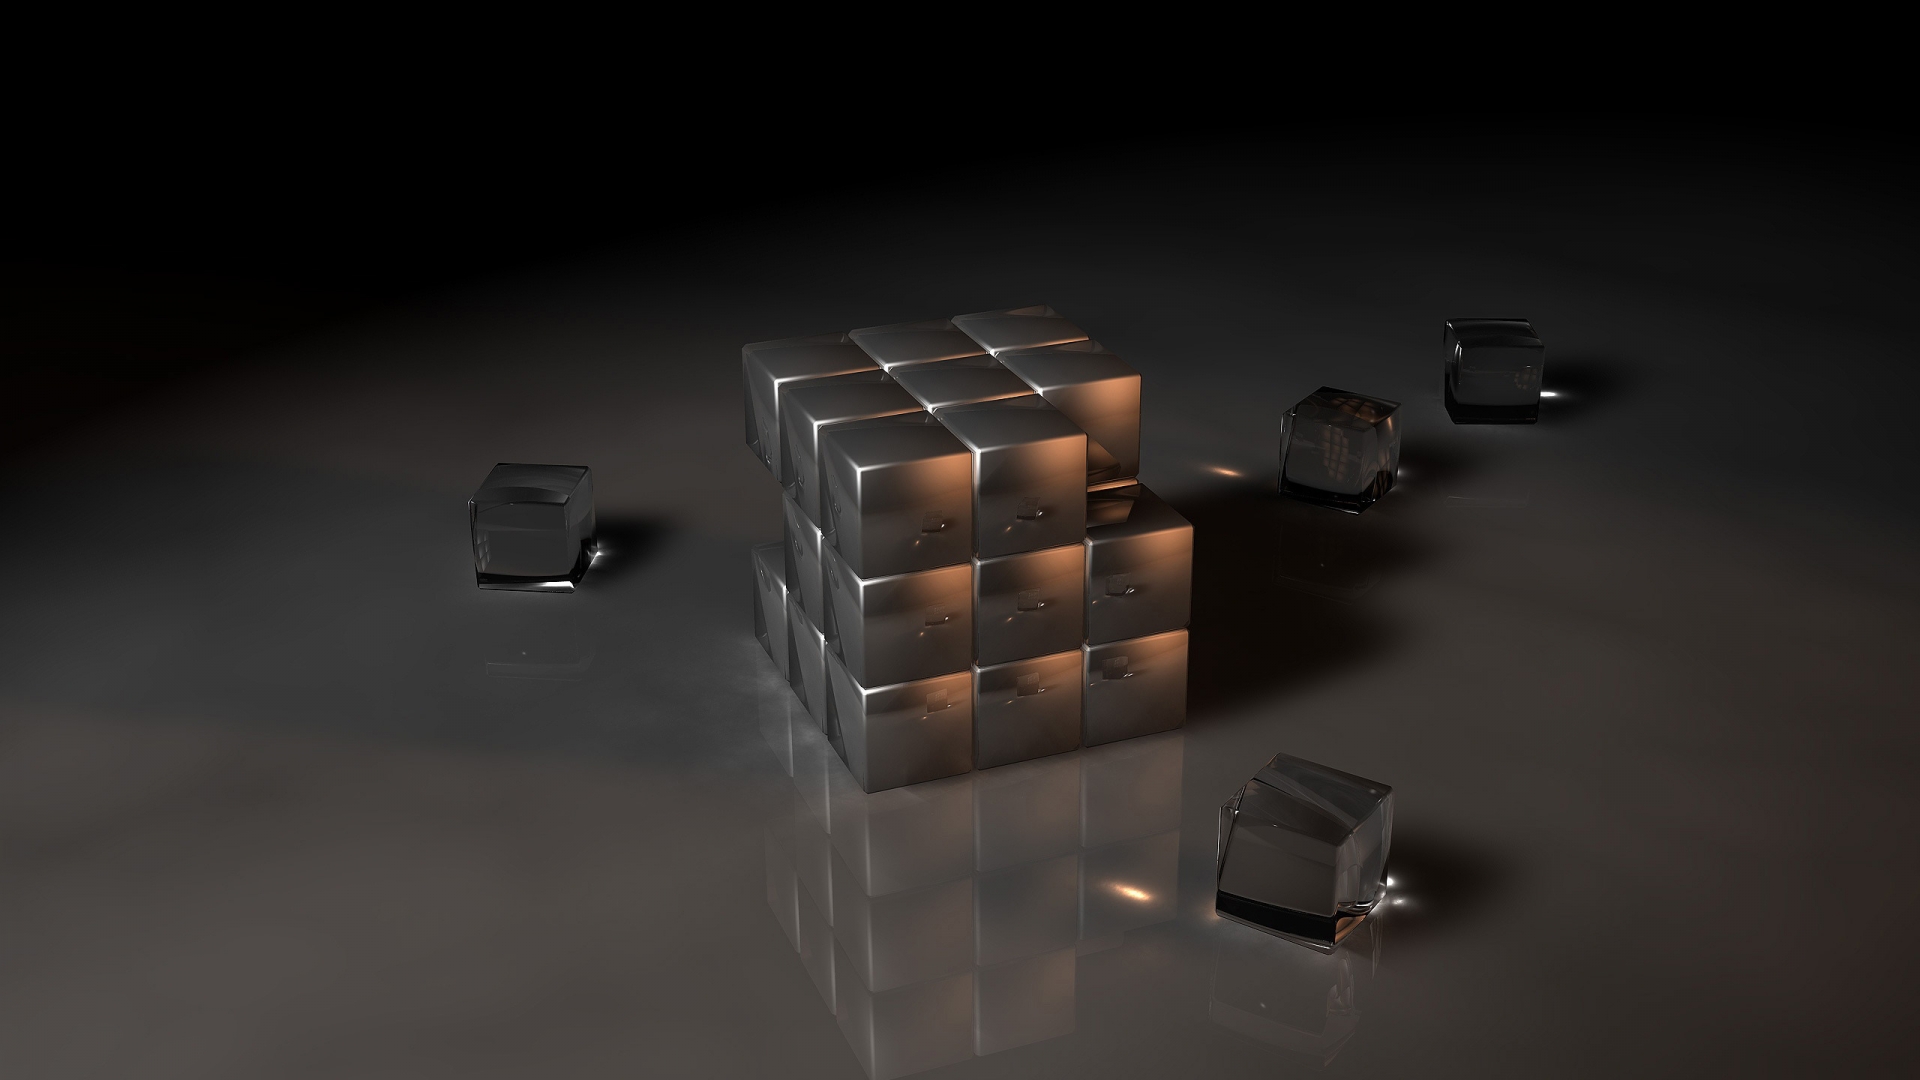 Black Rubiks Cube for 1920 x 1080 HDTV 1080p resolution